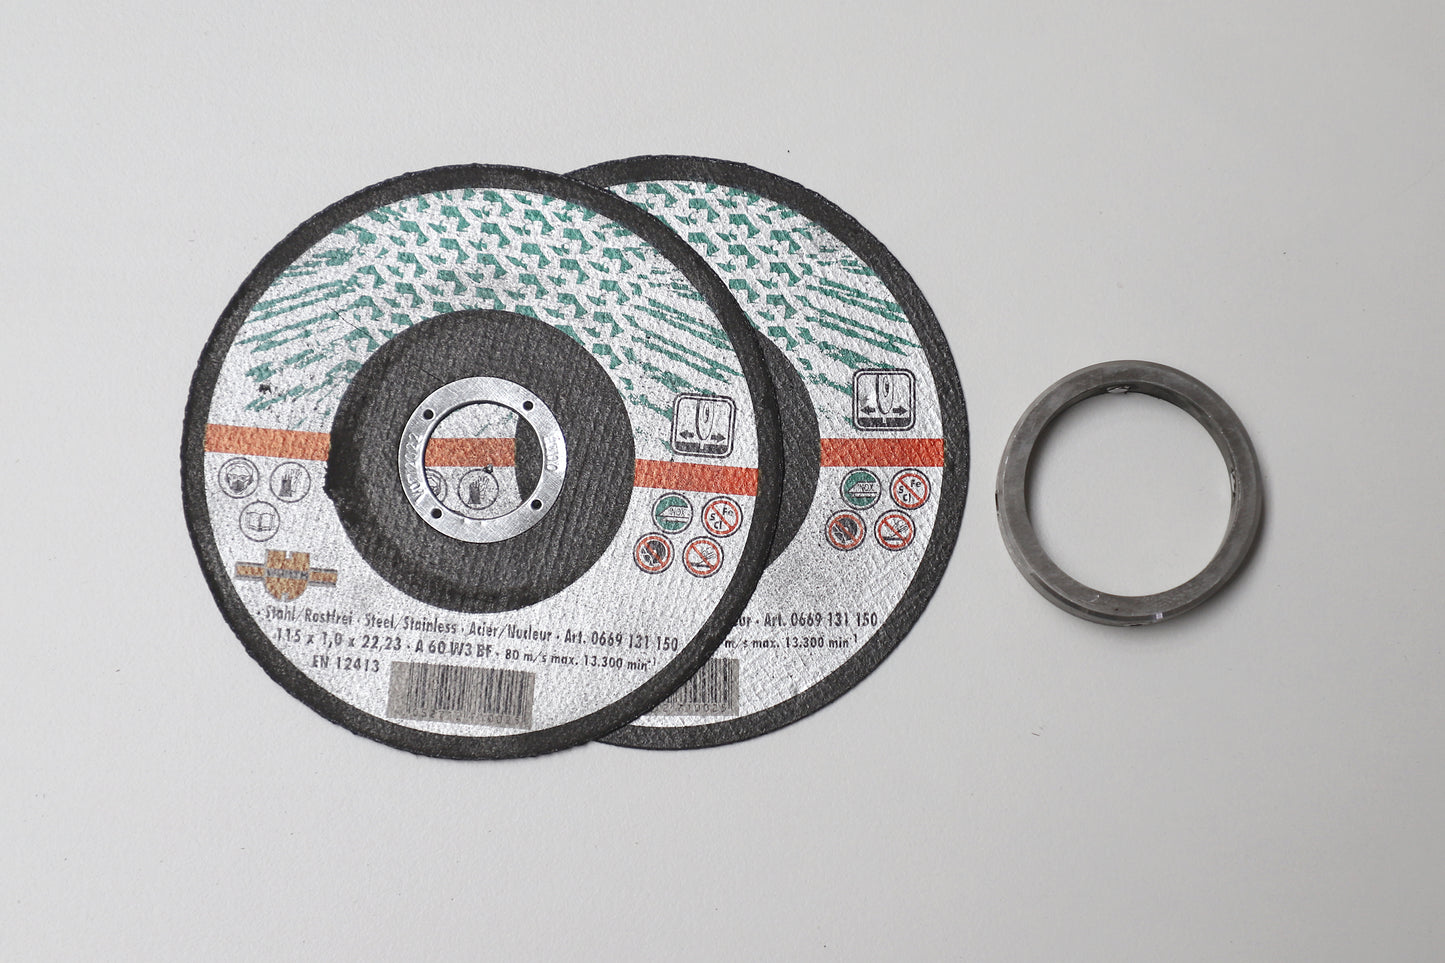 Kit de montage : 2 disques à tronçonner + bague, Ø 40 mm